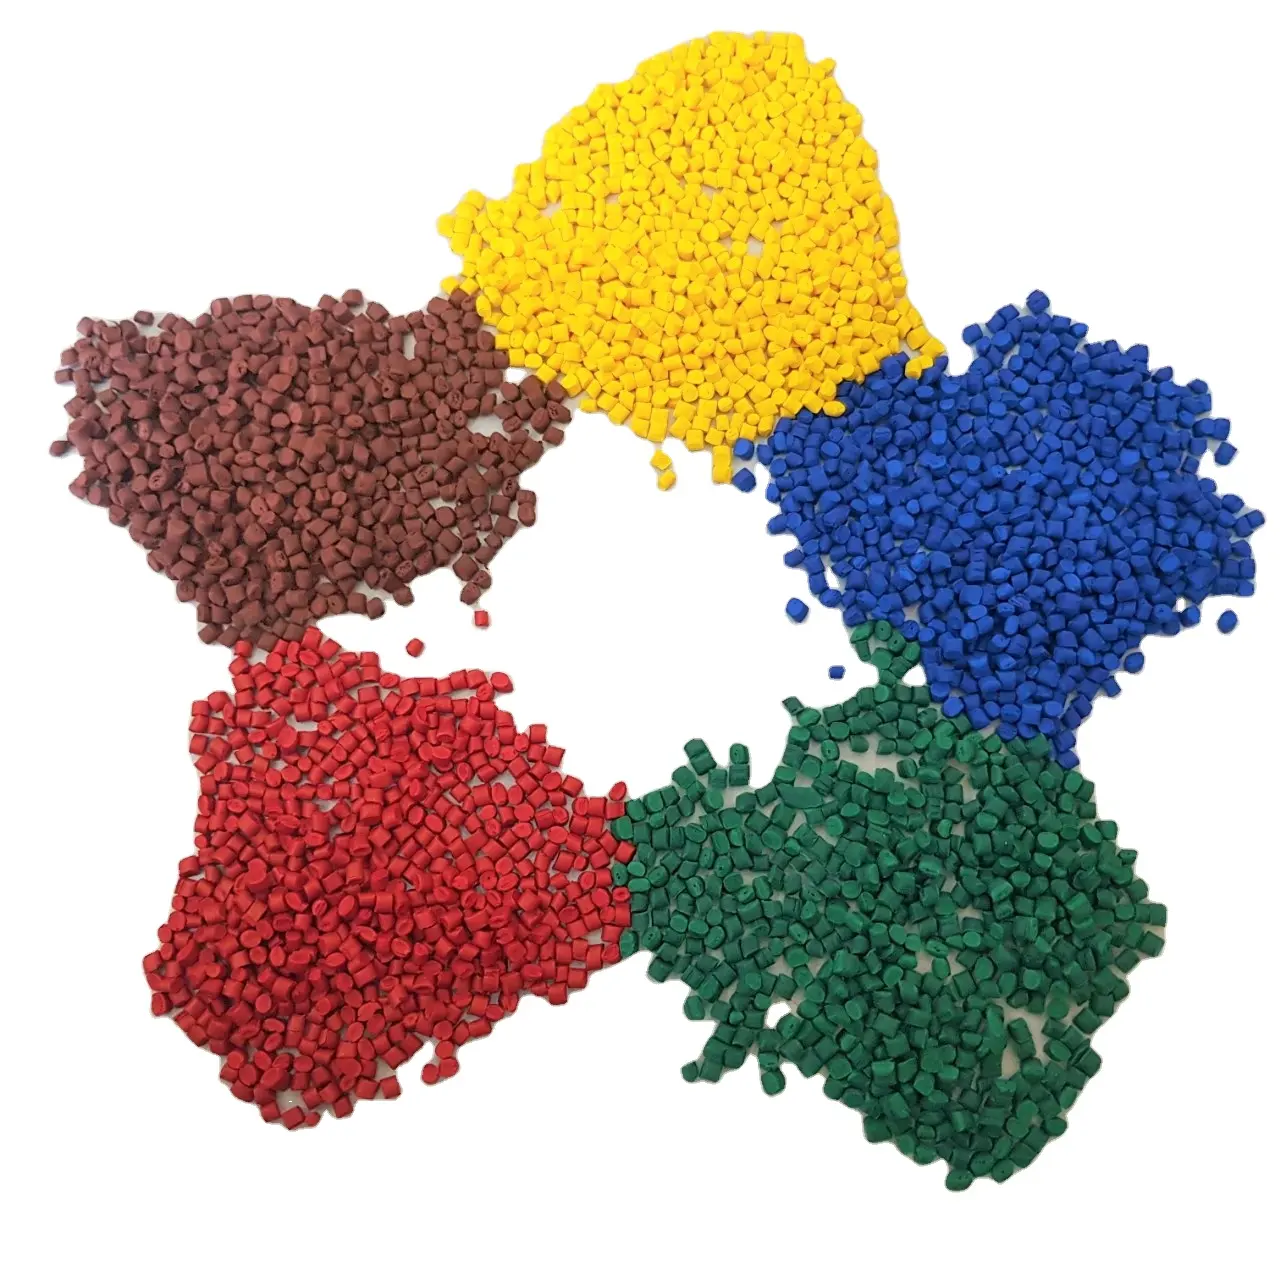 Melhor Qualidade Verde/Vermelho/Amarelo/Azul/Cor Laranja 30-50% Pigmento Masterbatch para PP/lldpe/produto plástico de hdpe no vietnã 2021